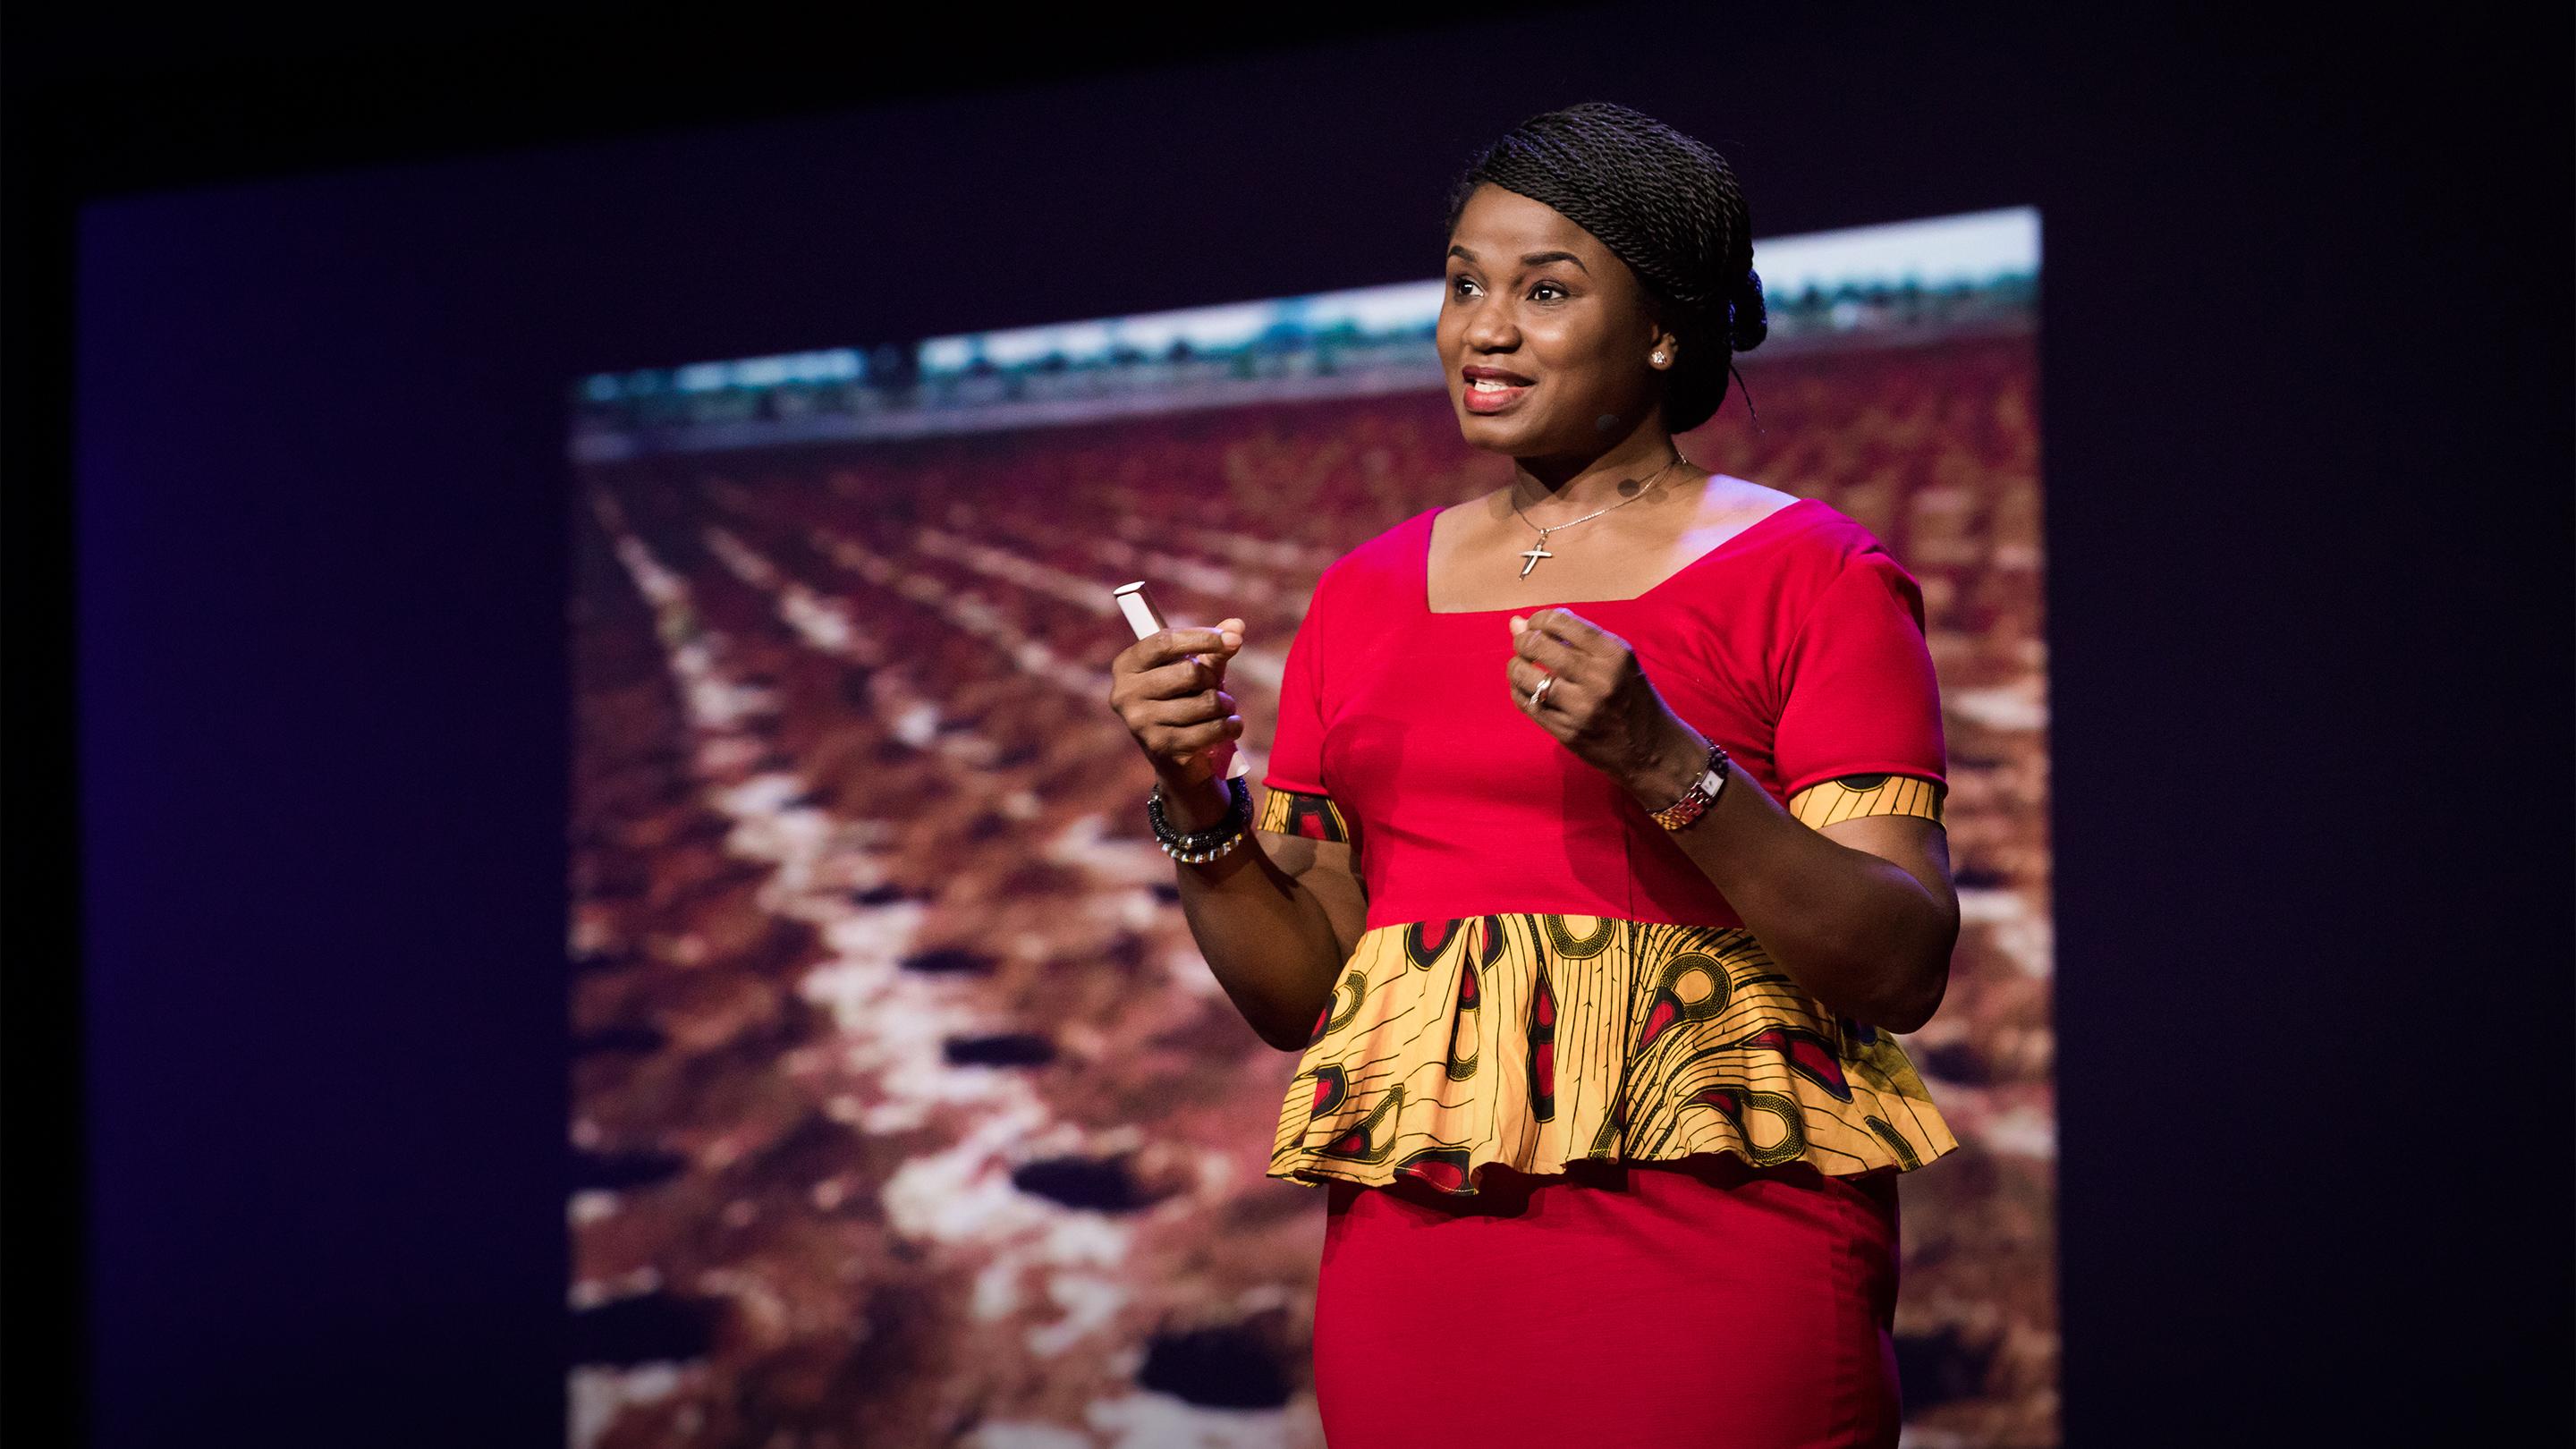 Comment l’Afrique peut utiliser son savoir traditionnel pour progresser | Chika Ezeanya-Esiobu